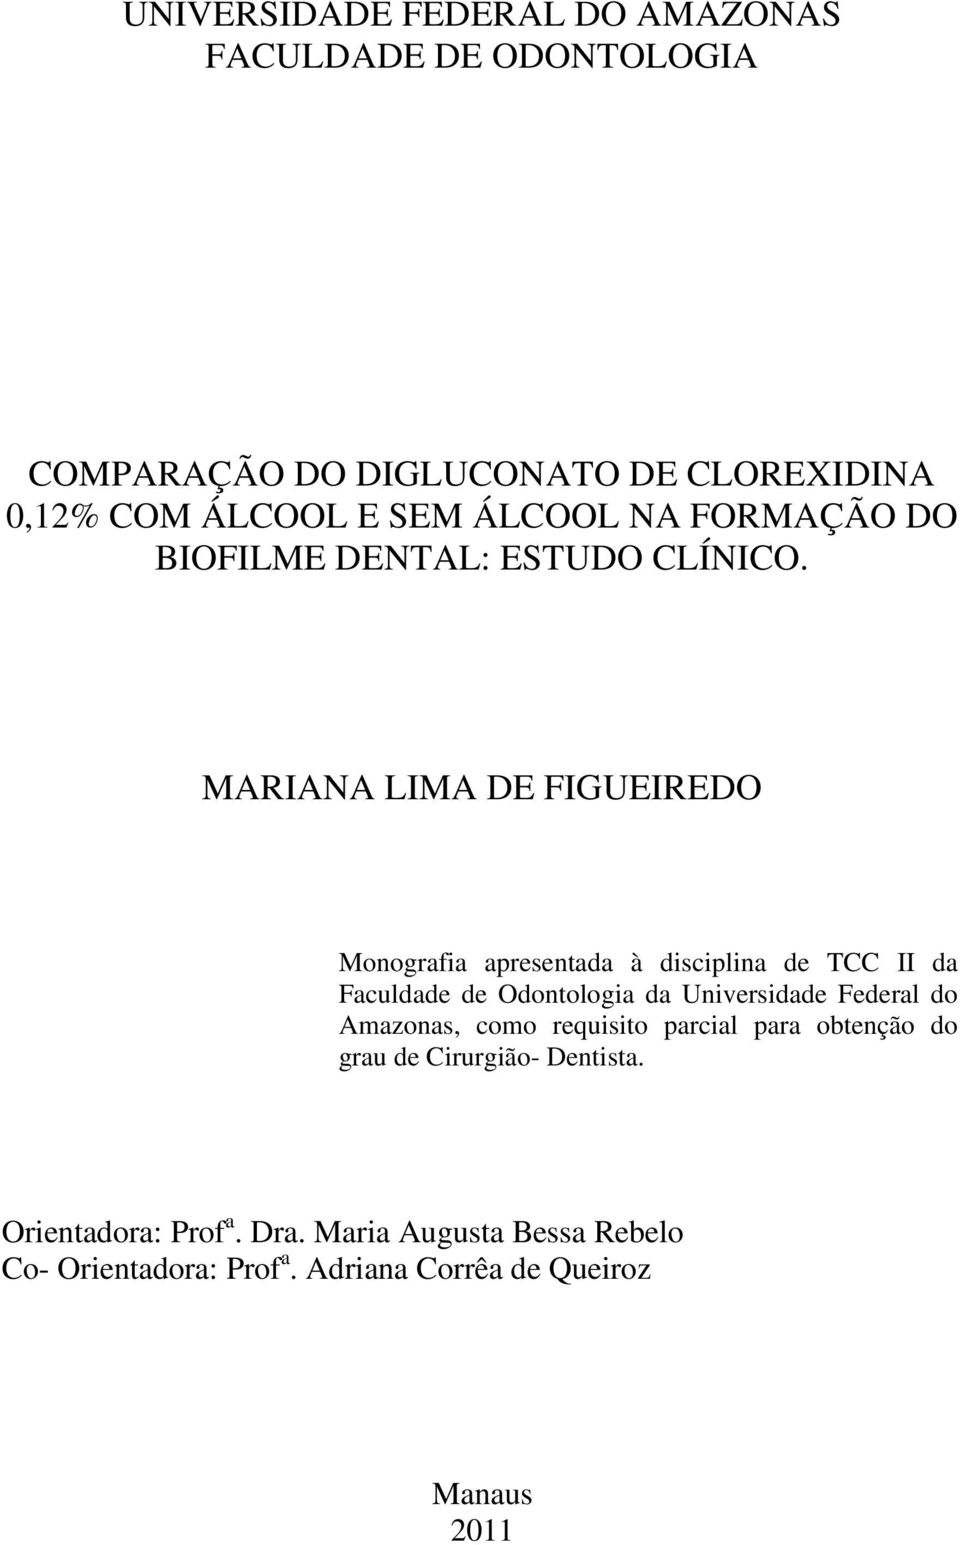 MARIANA LIMA DE FIGUEIREDO Monografia apresentada à disciplina de TCC II da Faculdade de Odontologia Monografia da Universidade apresentada Federal